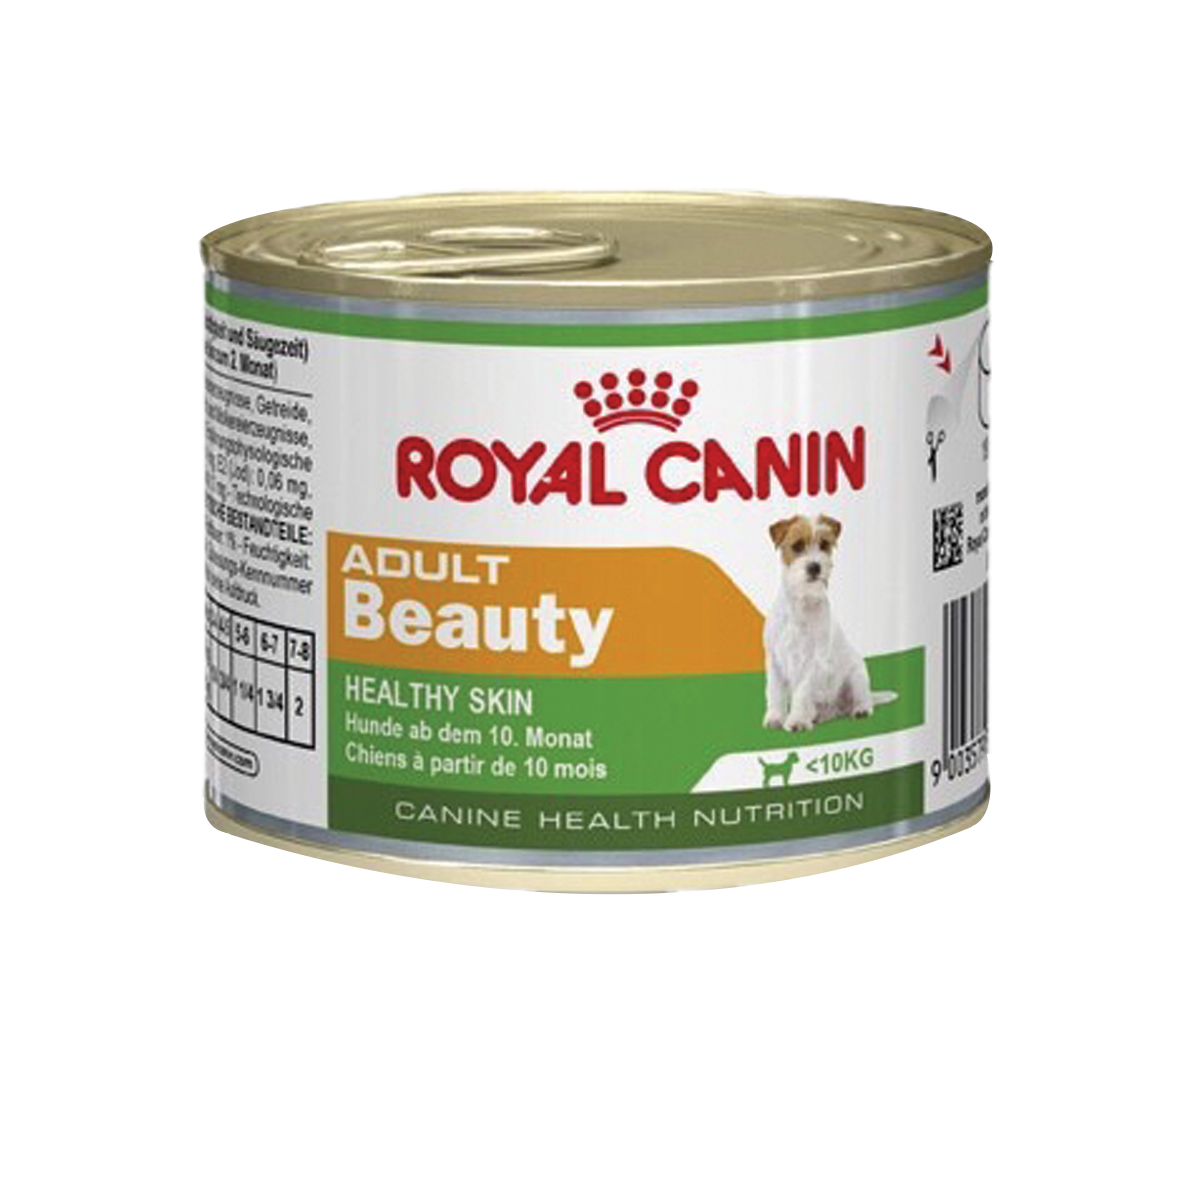 Royal Canin Beauty Adult โรยัล คานิน อาหารชนิดเปียกสำหรับสุนัขโตพันธุ์เล็กผิวแพ้ง่าย อายุ 10 เดือนขึ้นไป